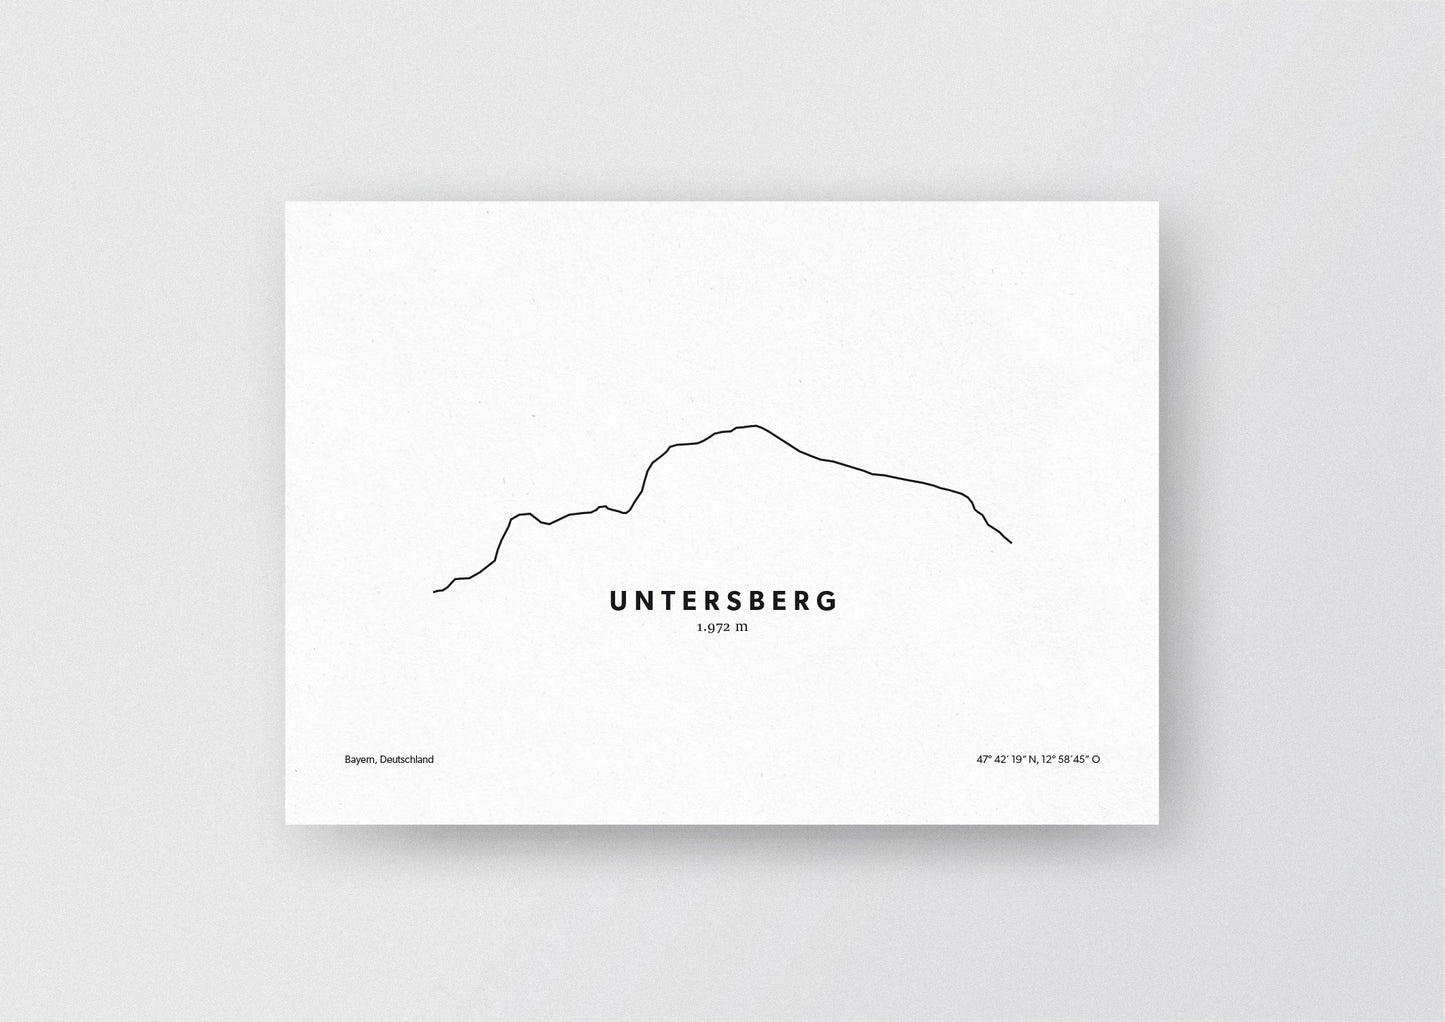 Minimalistische Illustration des Untersberg in den Berchtesgadener Alpen, als stilvoller Einrichtungsgegenstand für Zuhause.